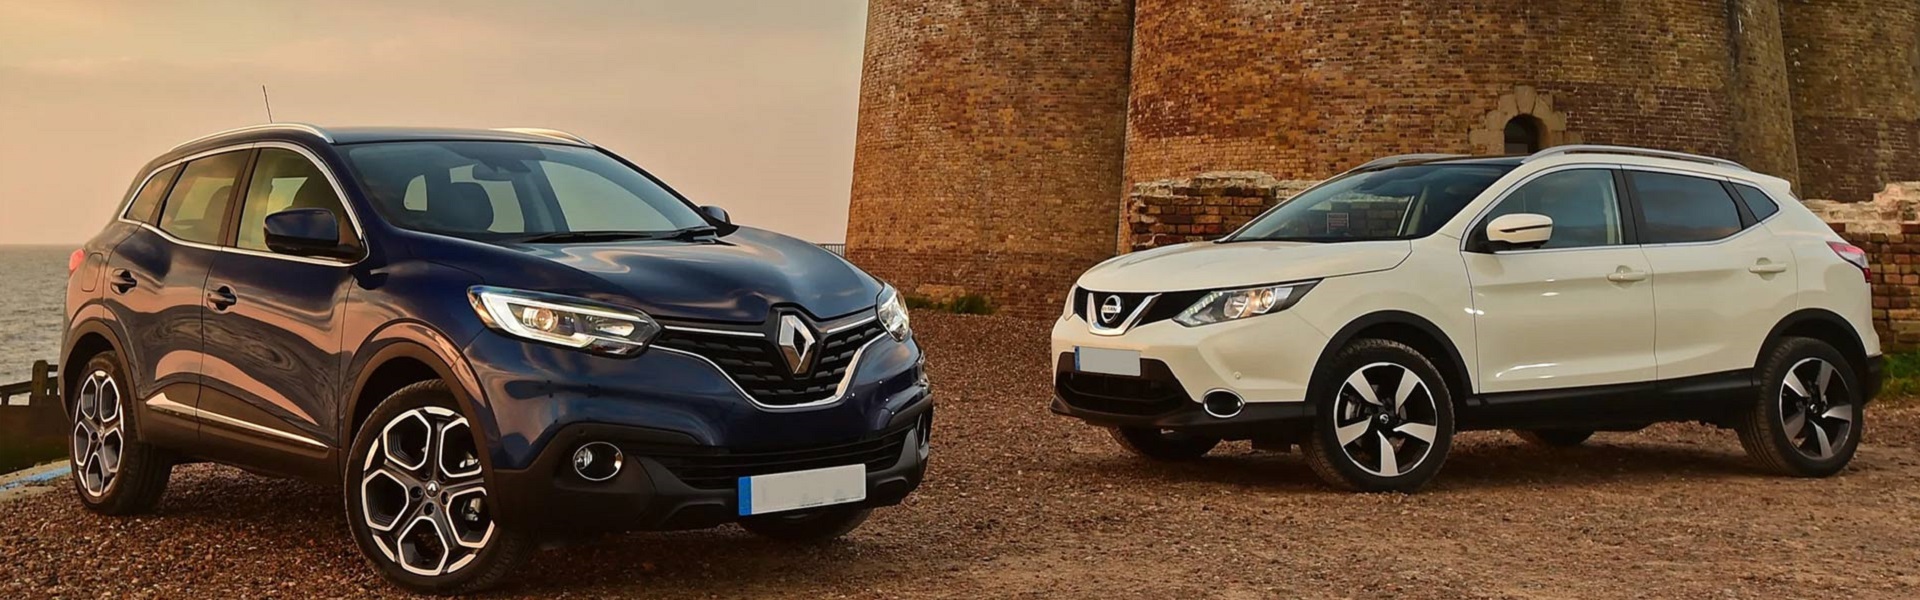 Renault delovi | Prodaja Renault, Dacia i Nissan vozila